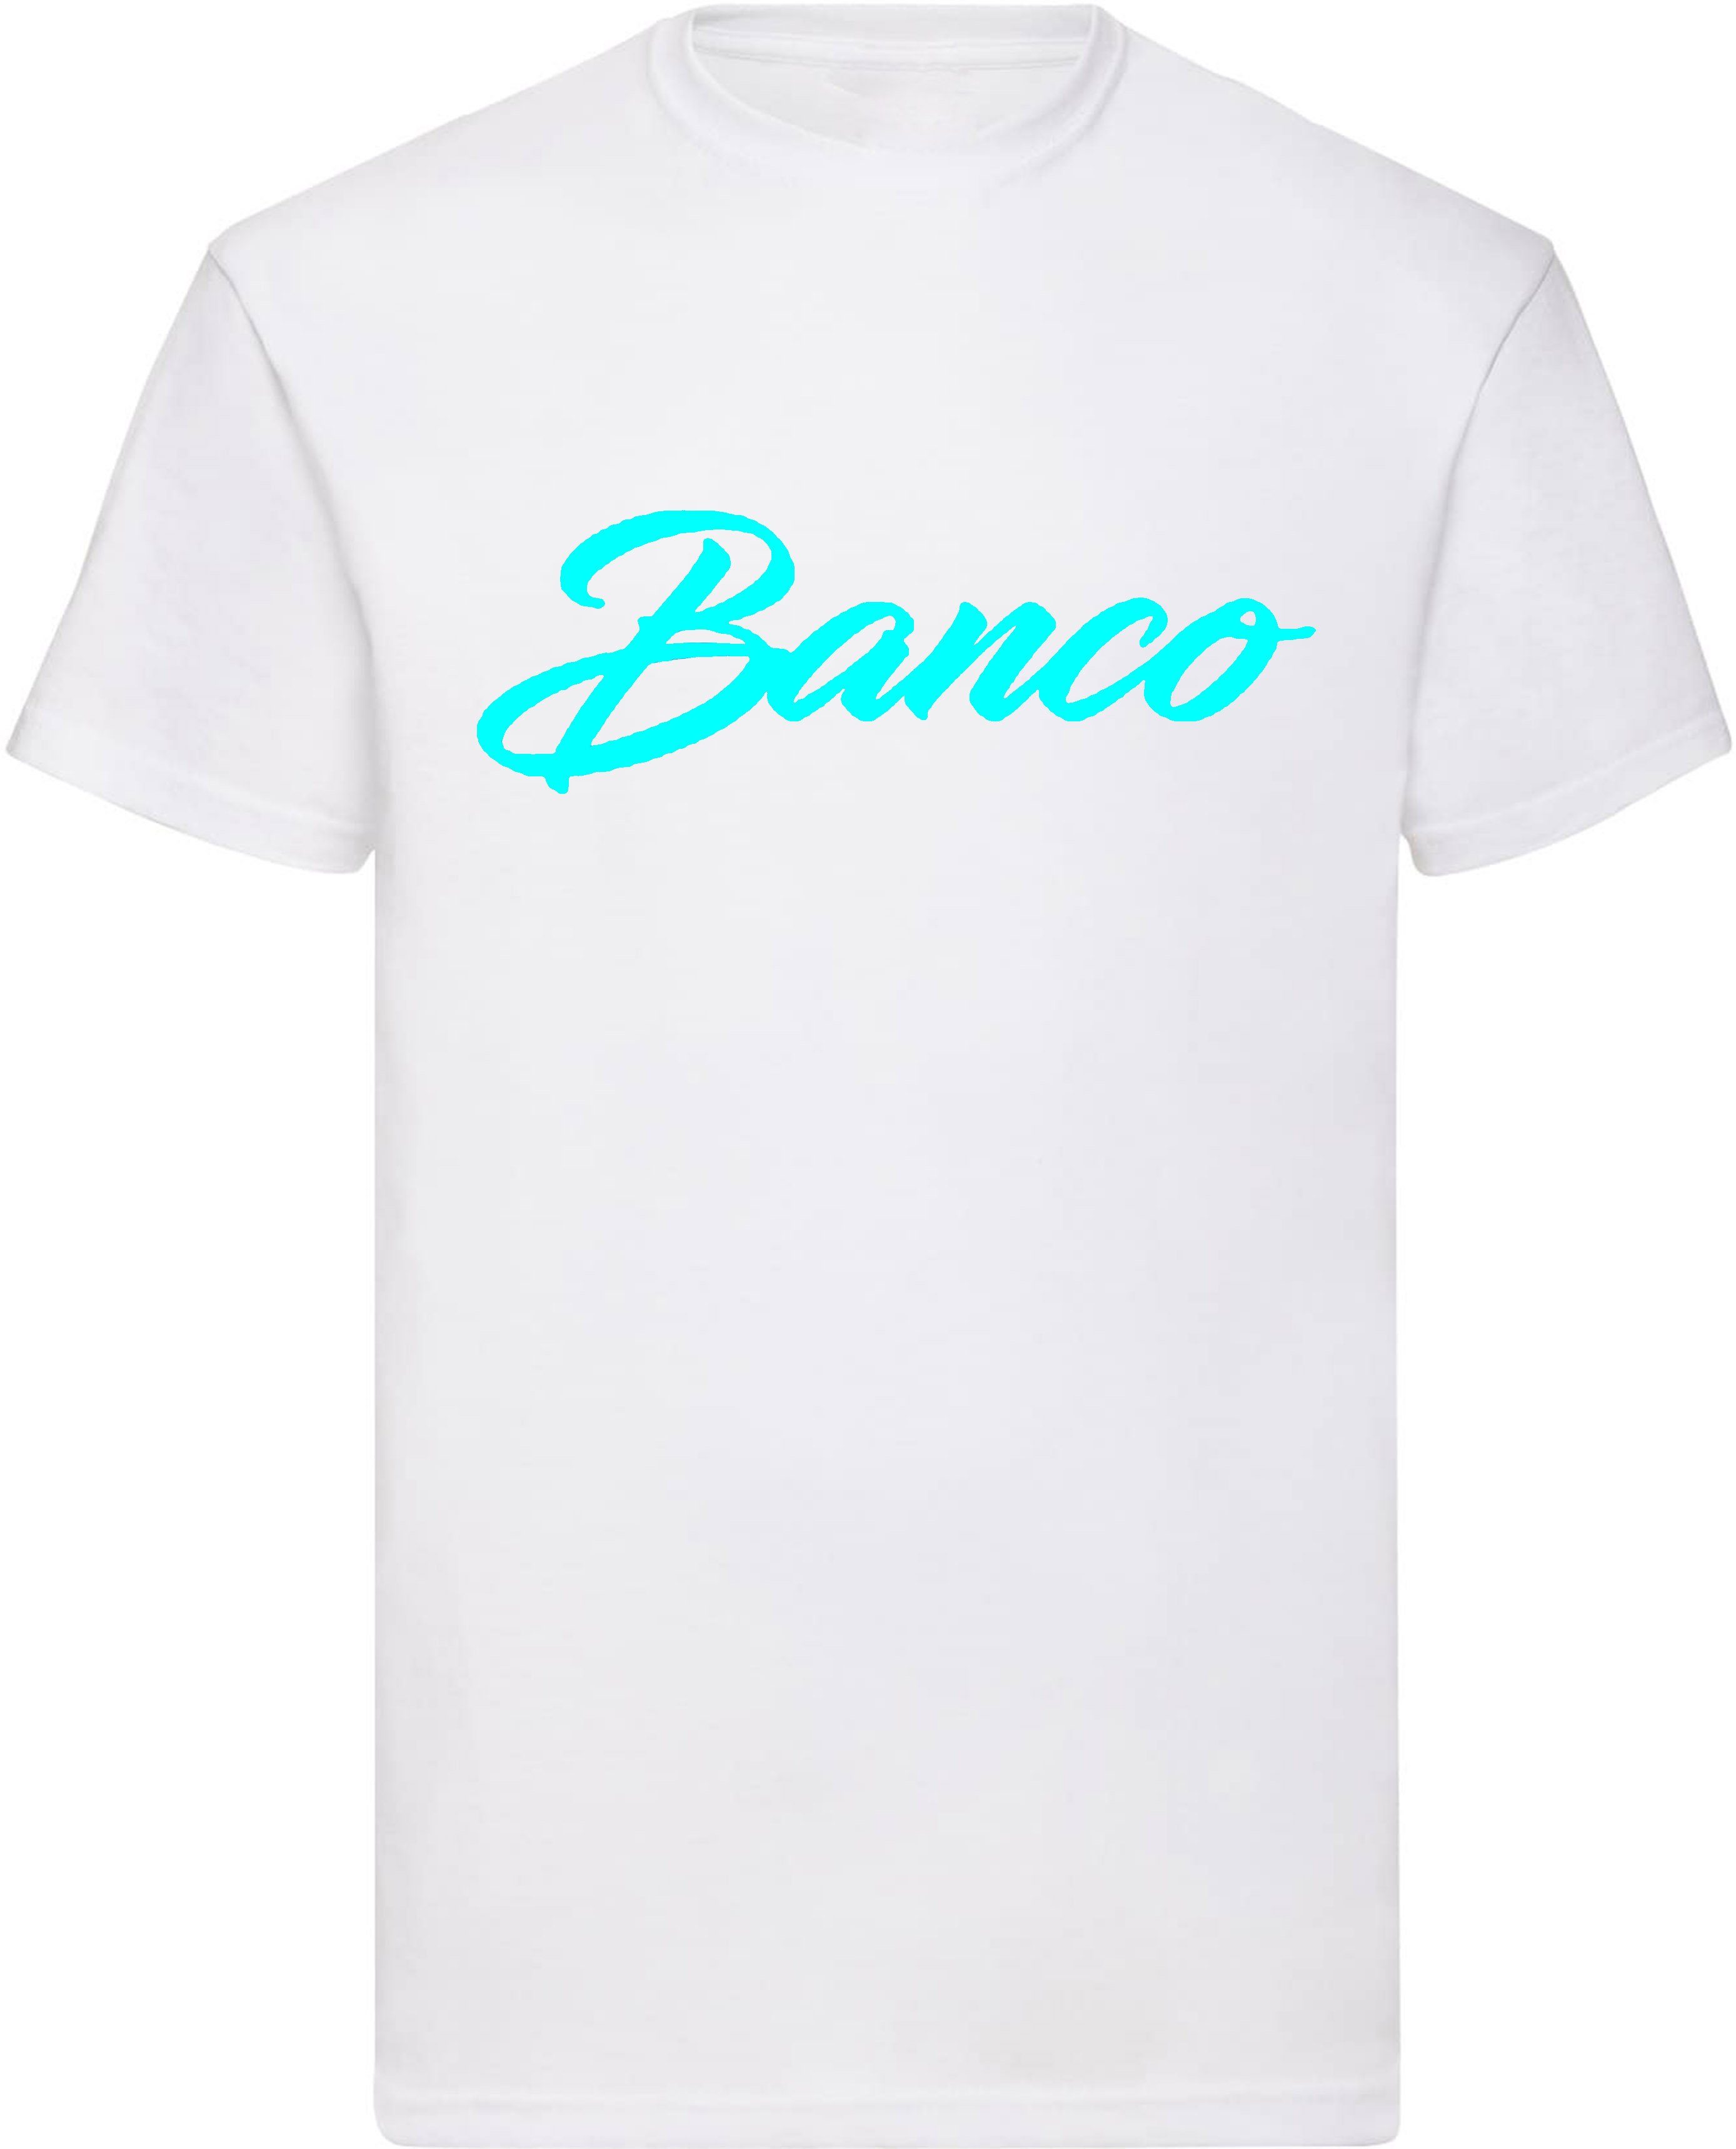 Banco T-Shirt Kurzarm 100% Baumwolle Rundhals Shirt Sommer Sport Freizeit Streetwear WeißTürkis